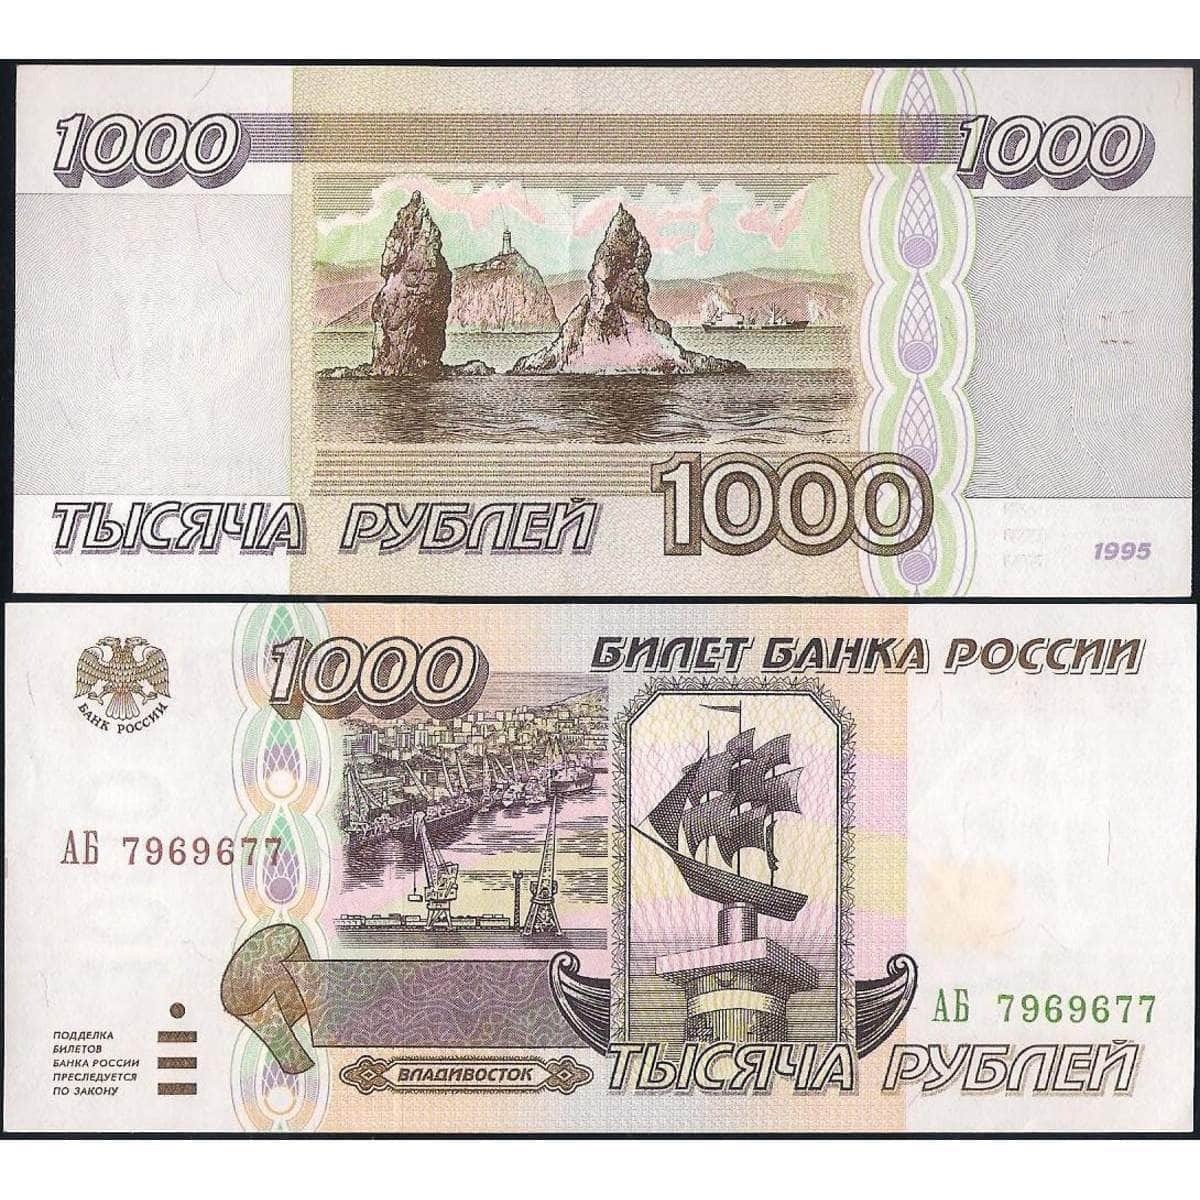 1 000 российских рублей. Тысяча рублей 1995 года. 1000 Рублей 1995 года бумажные. 1000 Купюра 1995 года. Деньги 1000 рублей 1995 года.